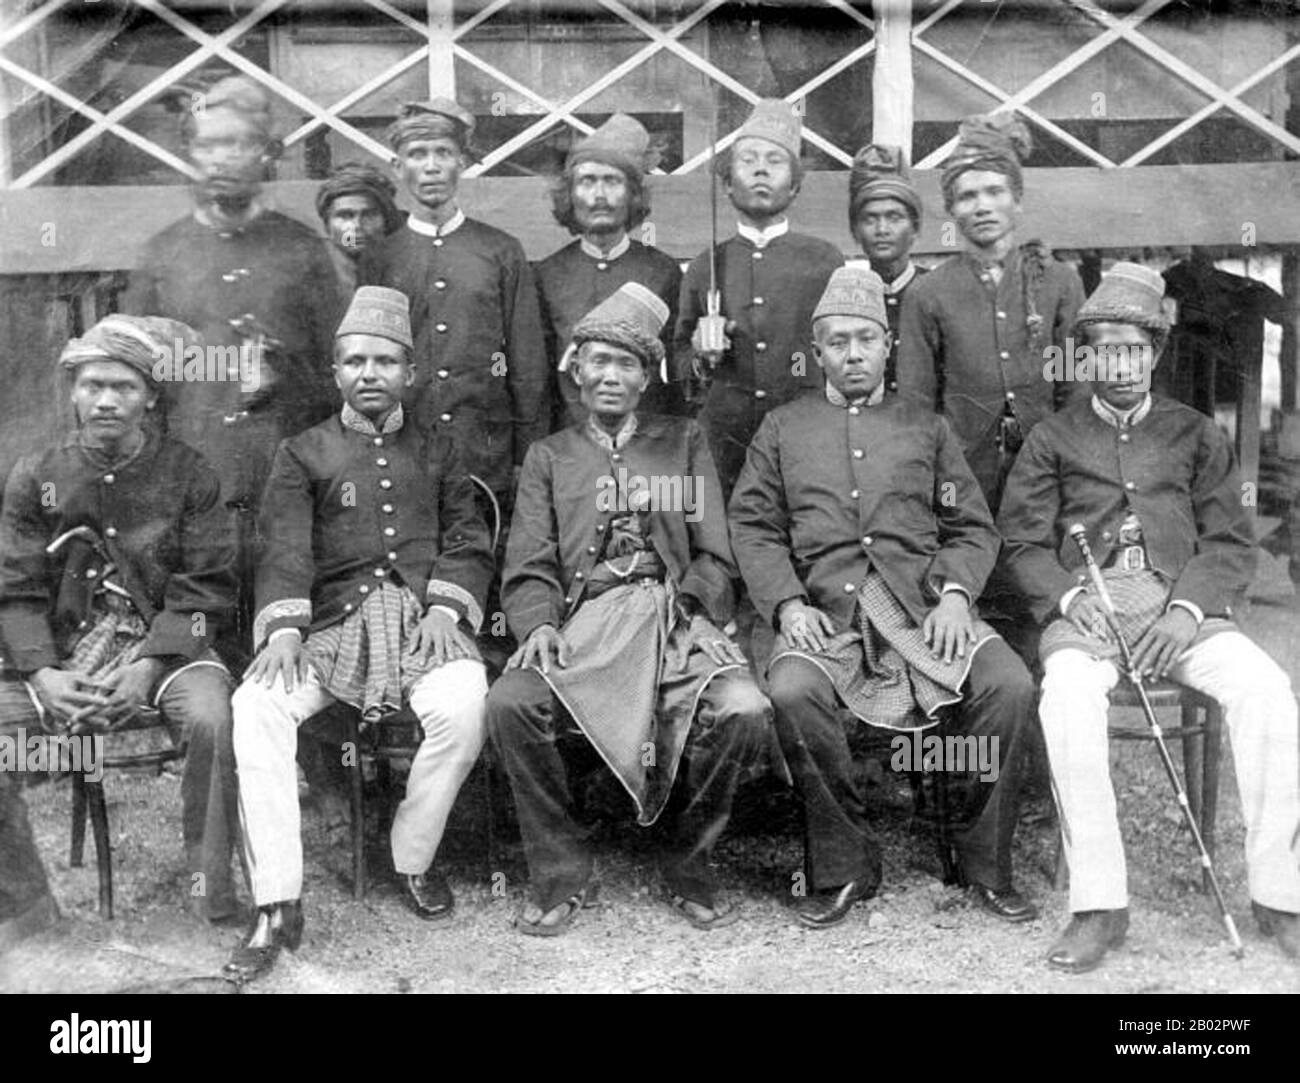 La guerre d'Aceh, également connue sous le nom de guerre néerlandaise ou de guerre Infidale (1873–1914), était un conflit militaire armé entre le Sultanat d'Aceh et les Pays-Bas, déclenché par des discussions entre les représentants d'Aceh et du Royaume-Uni à Singapour au début de 1873. La guerre faisait partie d'une série de conflits à la fin du XIXe siècle qui ont consolidé la domination néerlandaise sur l'Indonésie moderne. Teuku Umar (Meulaboh, Aceh occidentale, 1854 – 11 février 1899) était un chef de campagne de guérilla contre les Hollandais à Aceh pendant la guerre d'Aceh. Il est tombé lorsque les troupes néerlandaises ont lancé une attaque surprise Banque D'Images